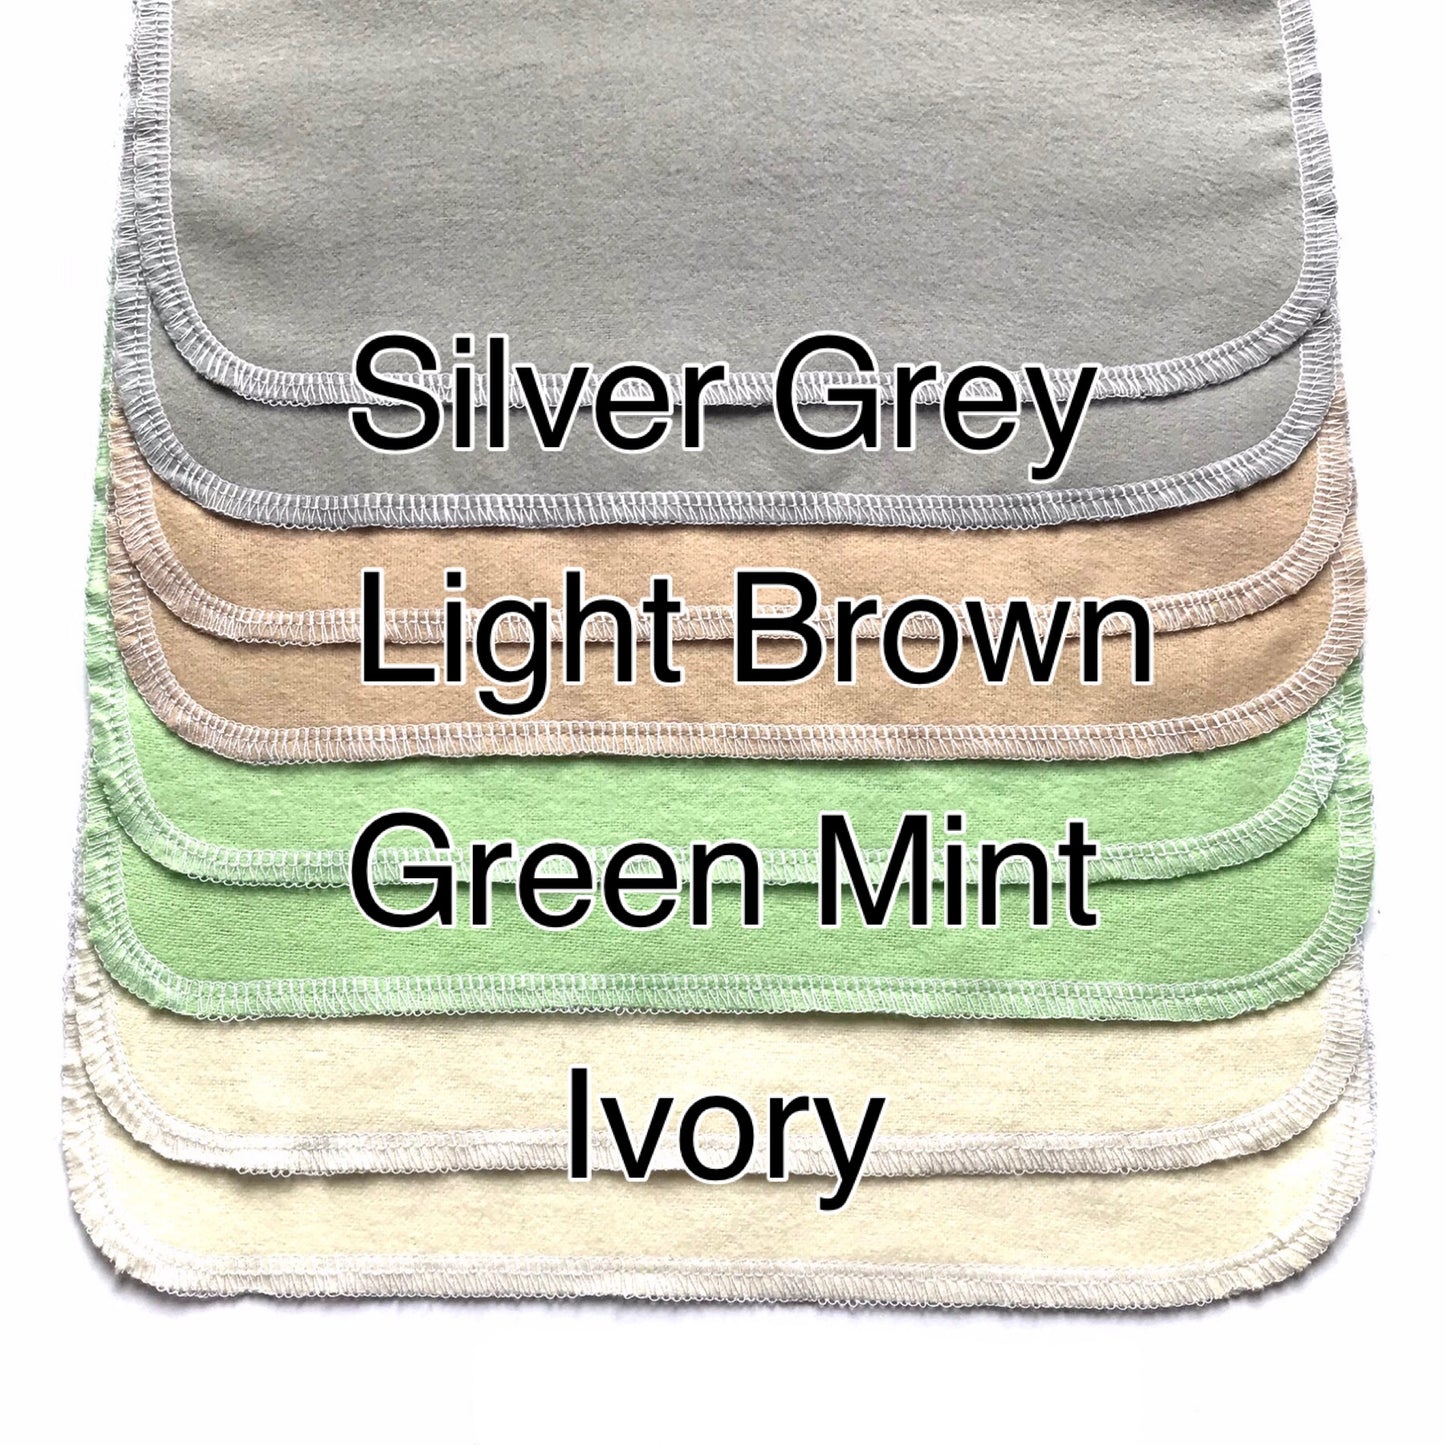 2 layers Unpaper towel 100% Cotton - reusable kitchen towel - Cotton napkins - paperless napkins - Cloth Napkins reusable Cloth towel